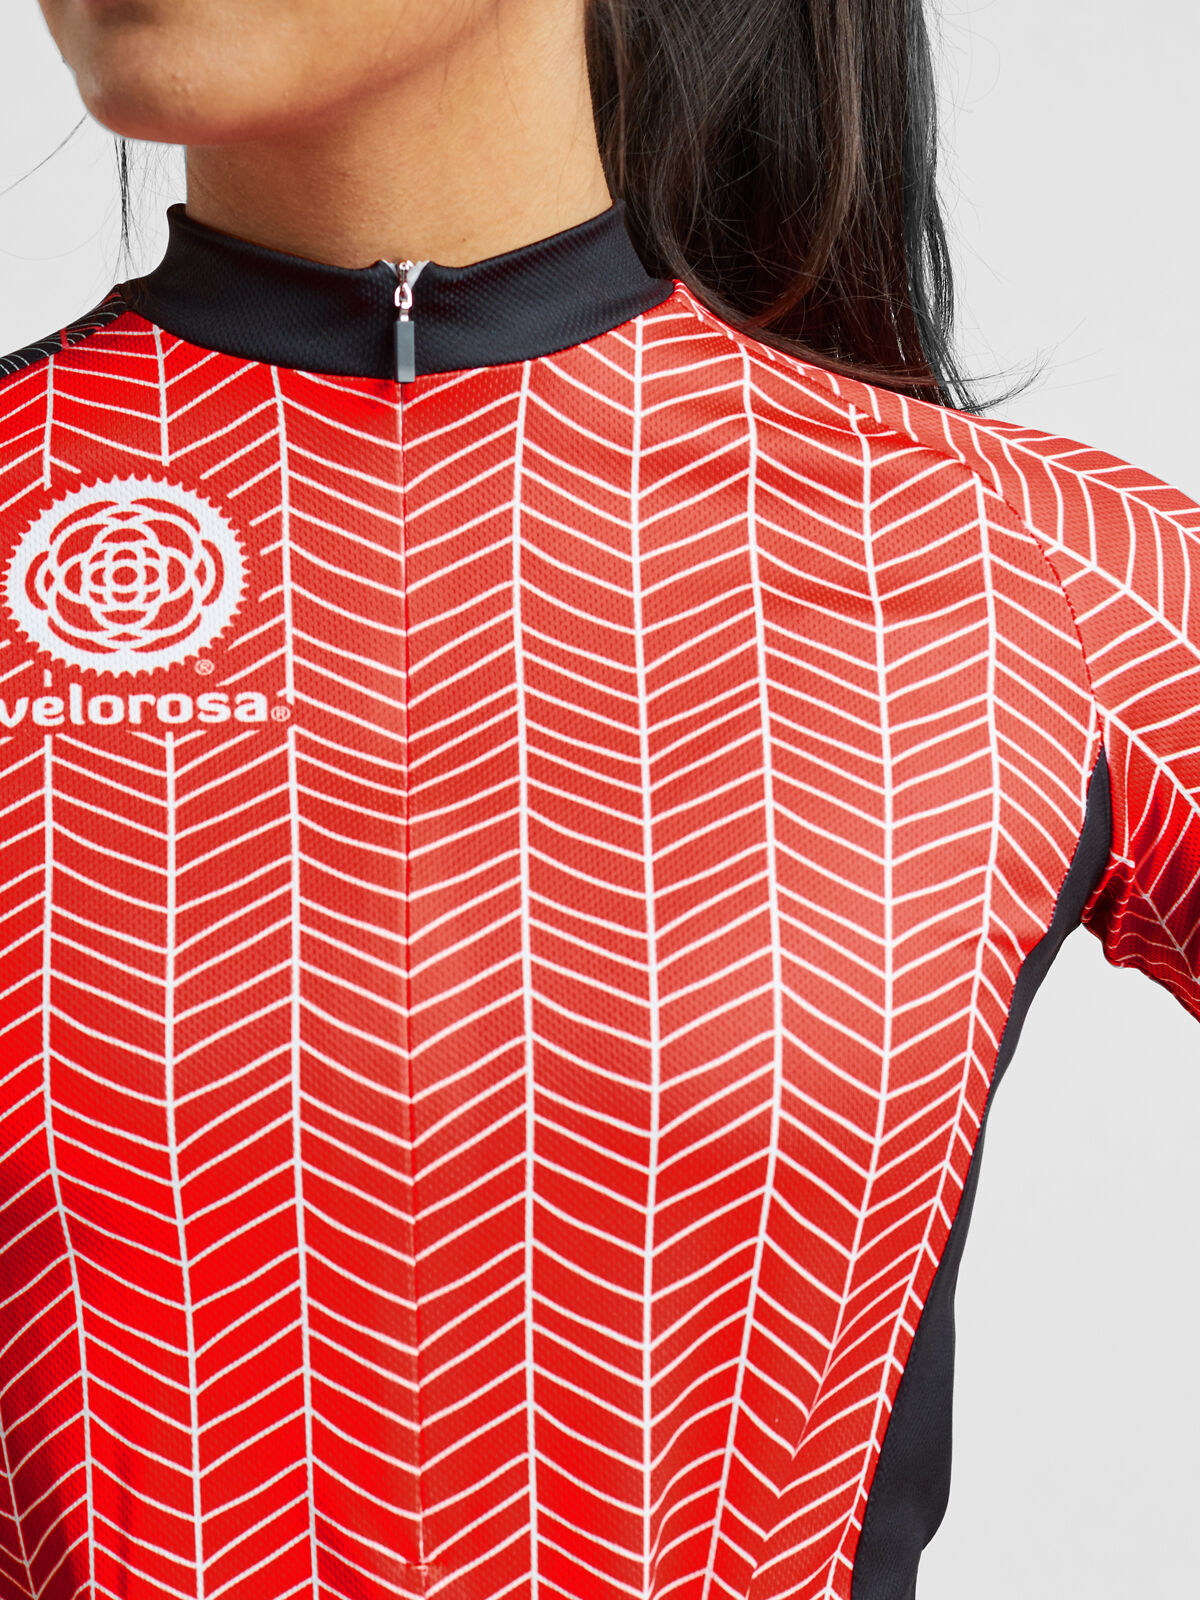 Size Medium EUC Details about   World Jerseys Cyclist Women’s Zippered Jerseys Lot Of 2